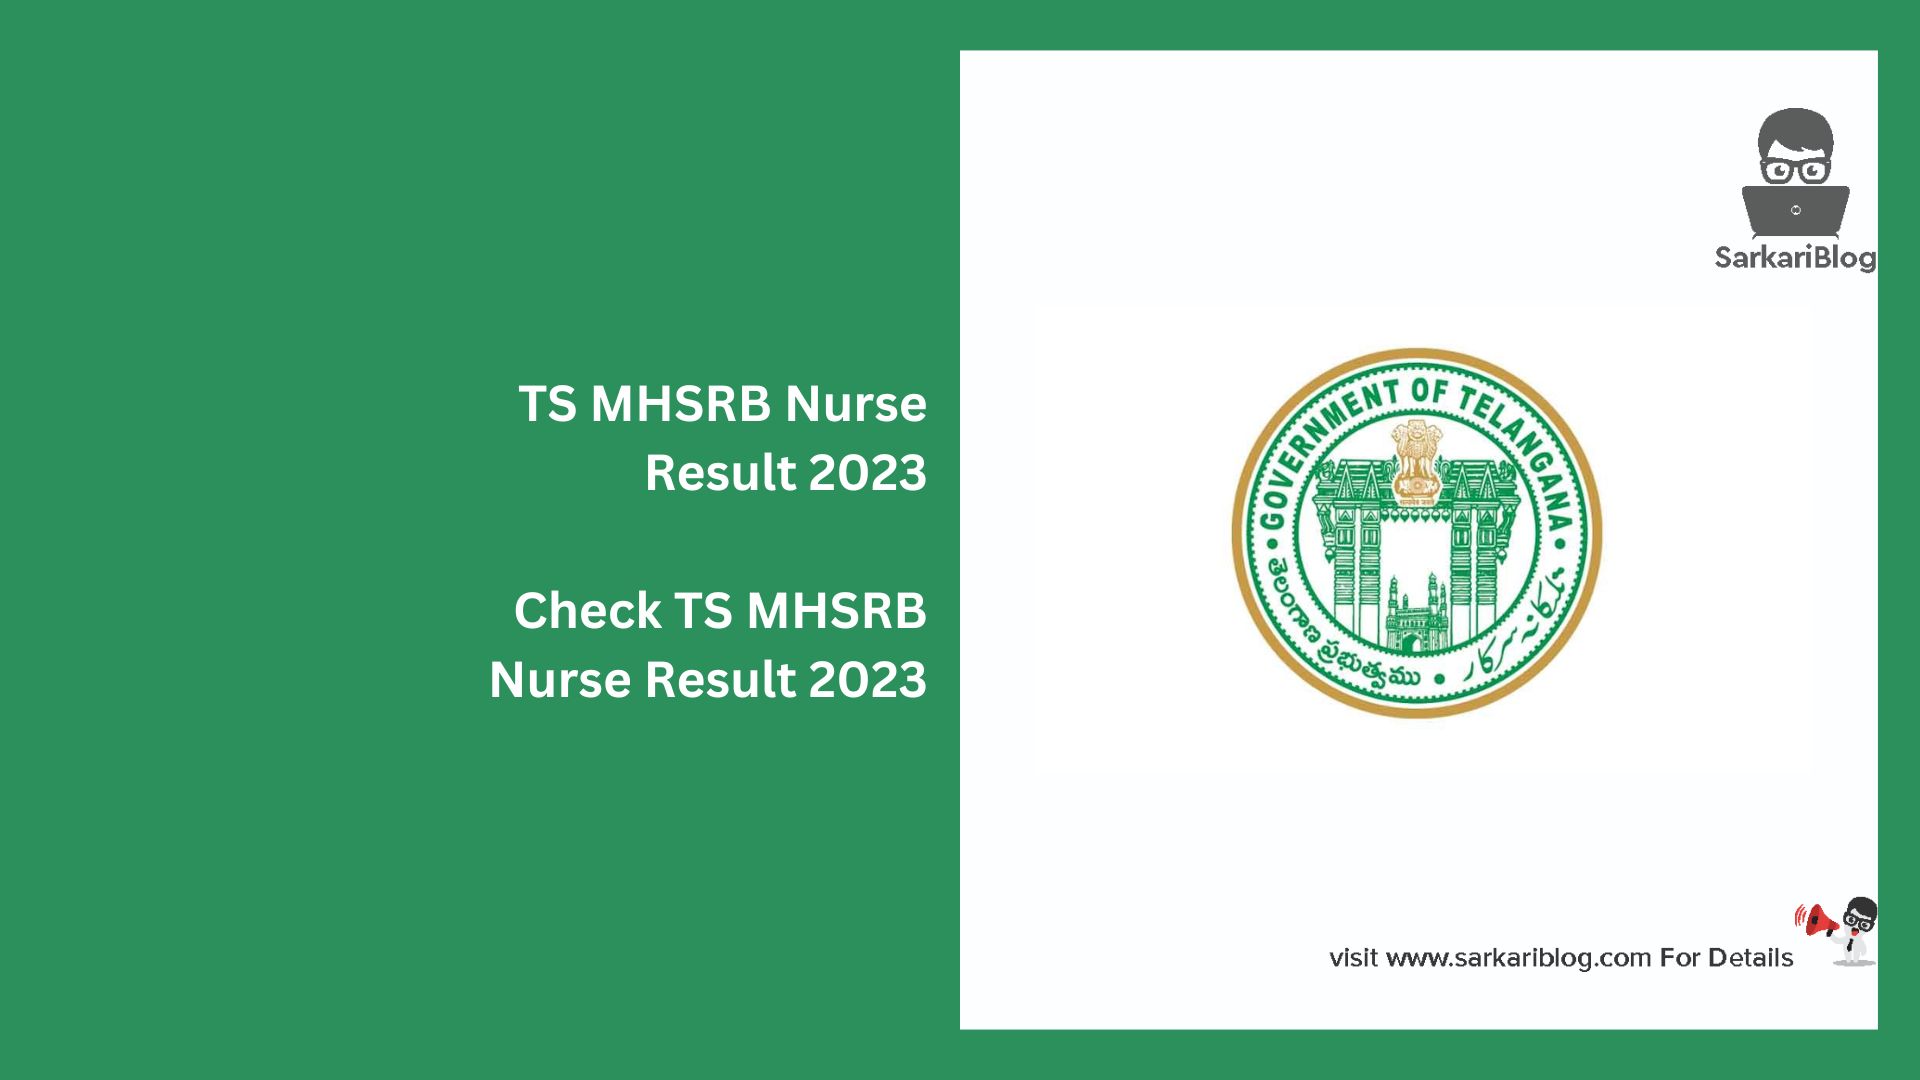 TS MHSRB Nurse Result 2023